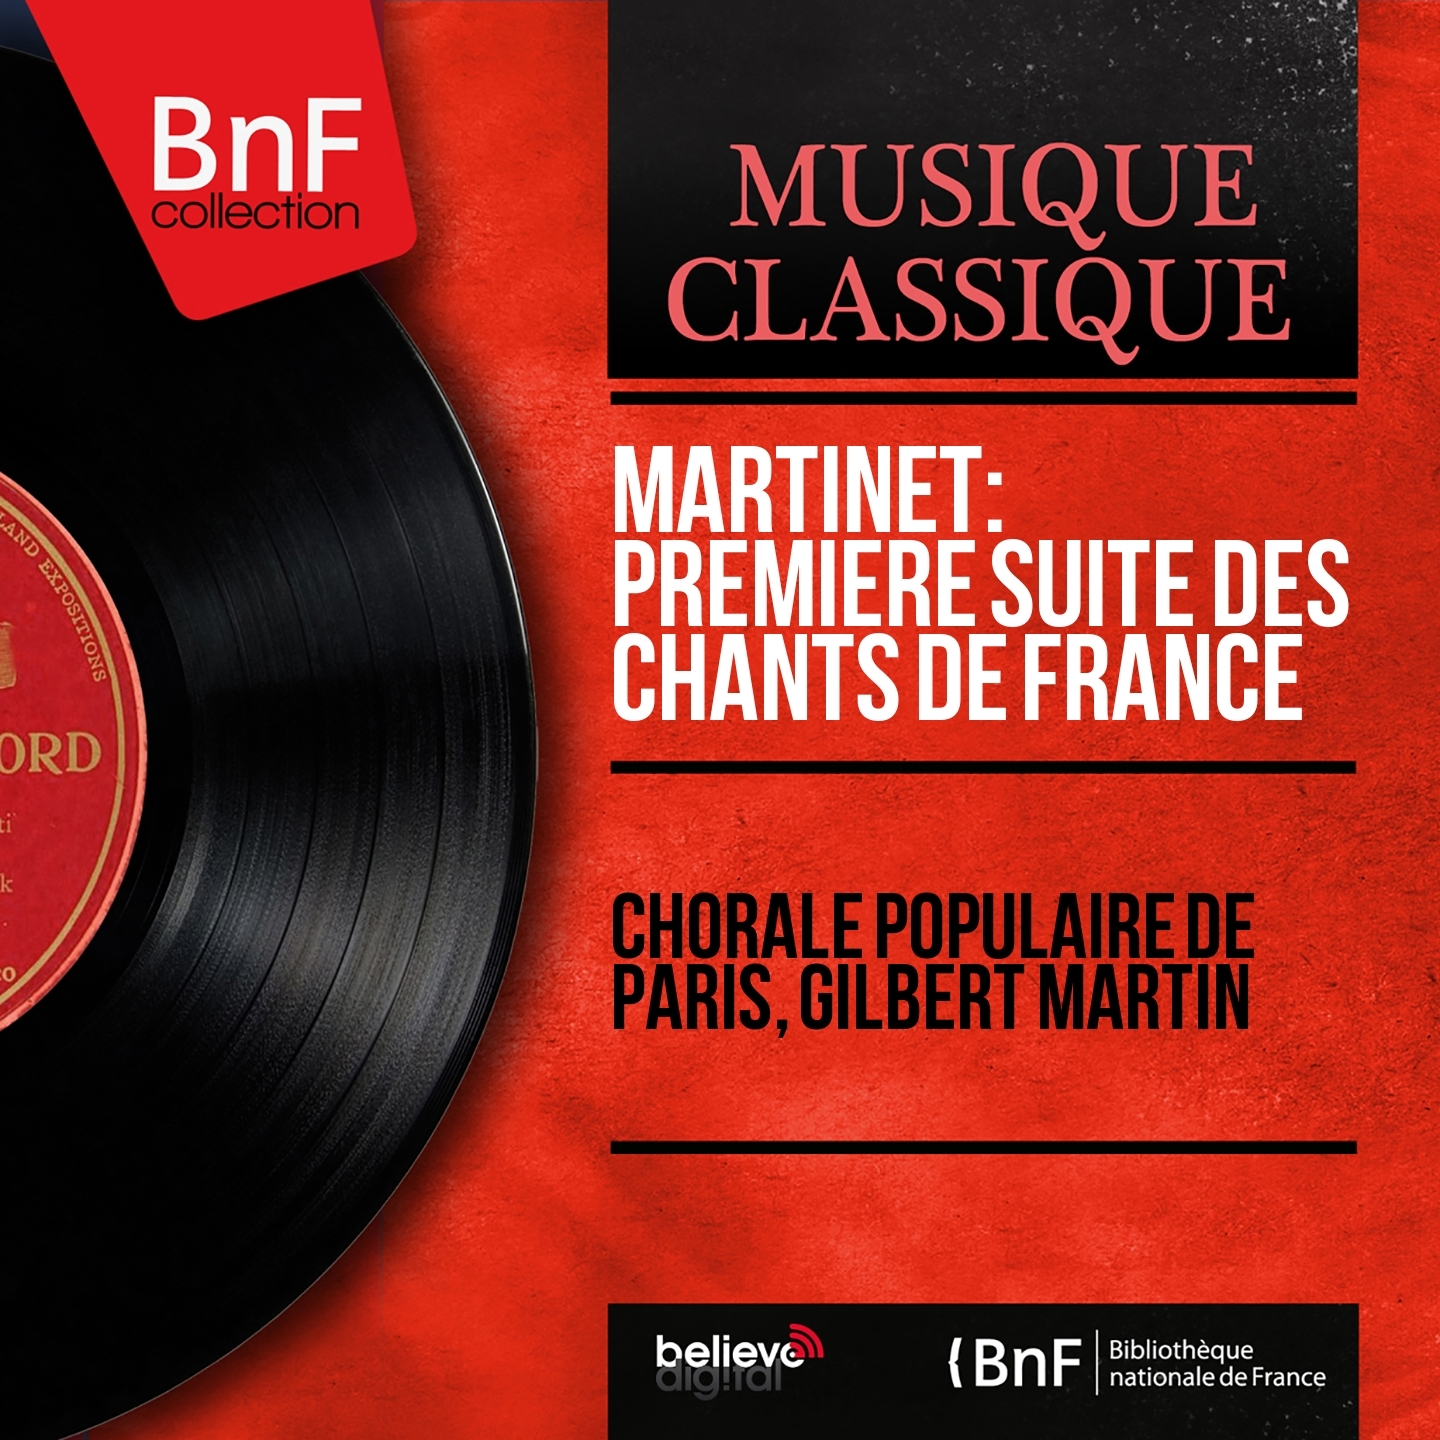 Martinet: Premie re suite des Chants de France Mono Version